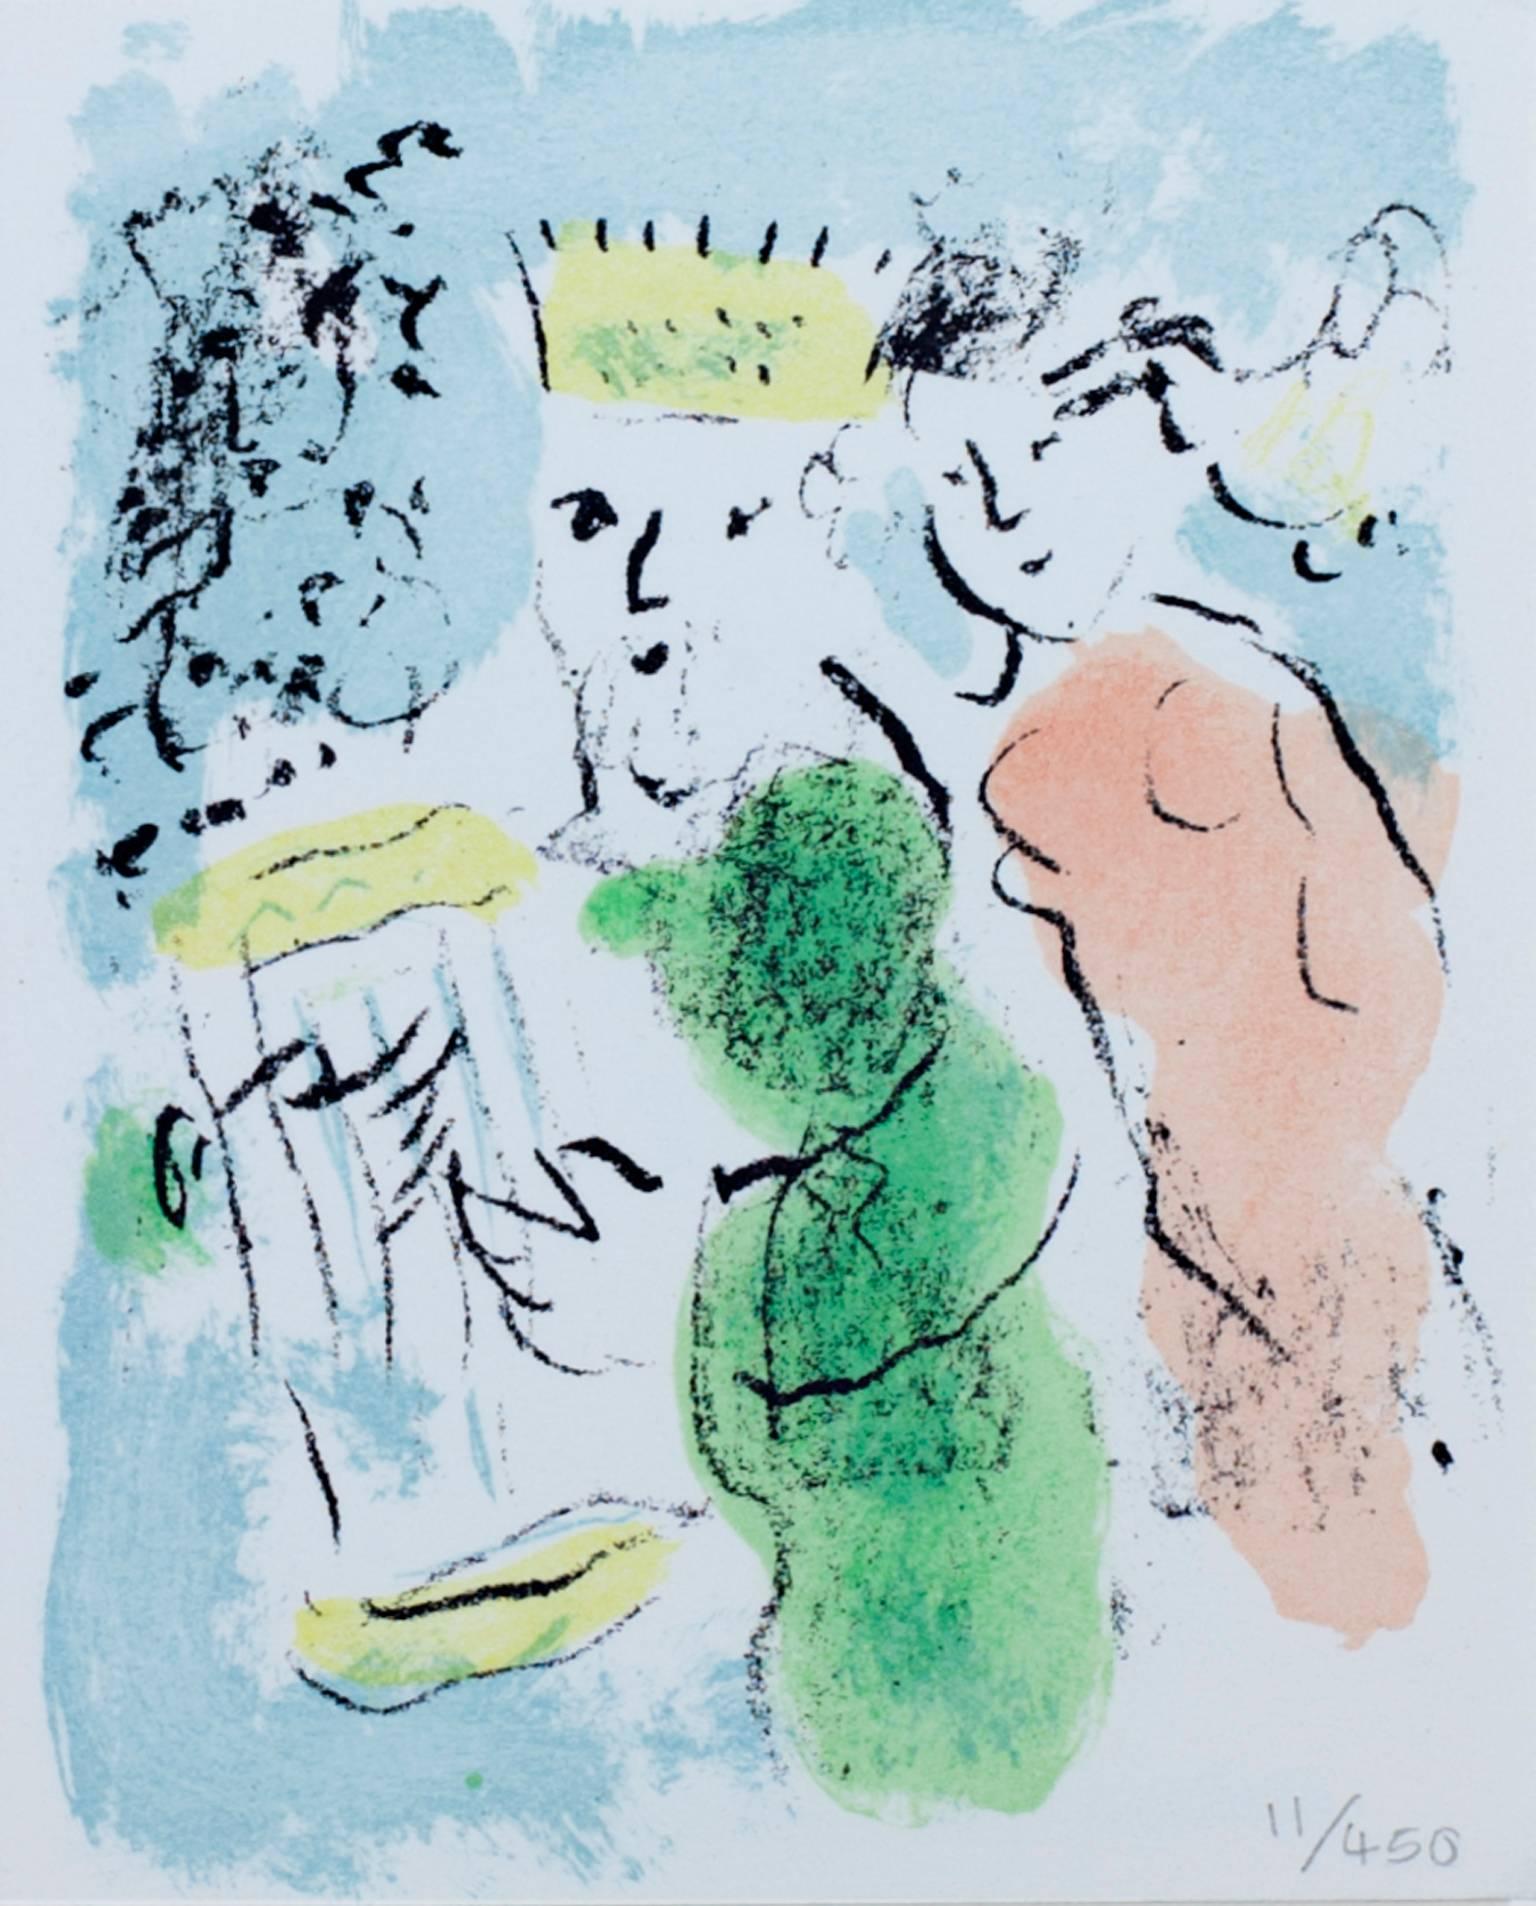 "Carte De Voeux (New Year Greeting Card)" est une lithographie originale en couleurs de Marc Chagall. Il s'agit de l'édition 11/450, et le numéro est écrit au crayon en bas à droite. Cette pièce représente un homme portant une couronne et une femme